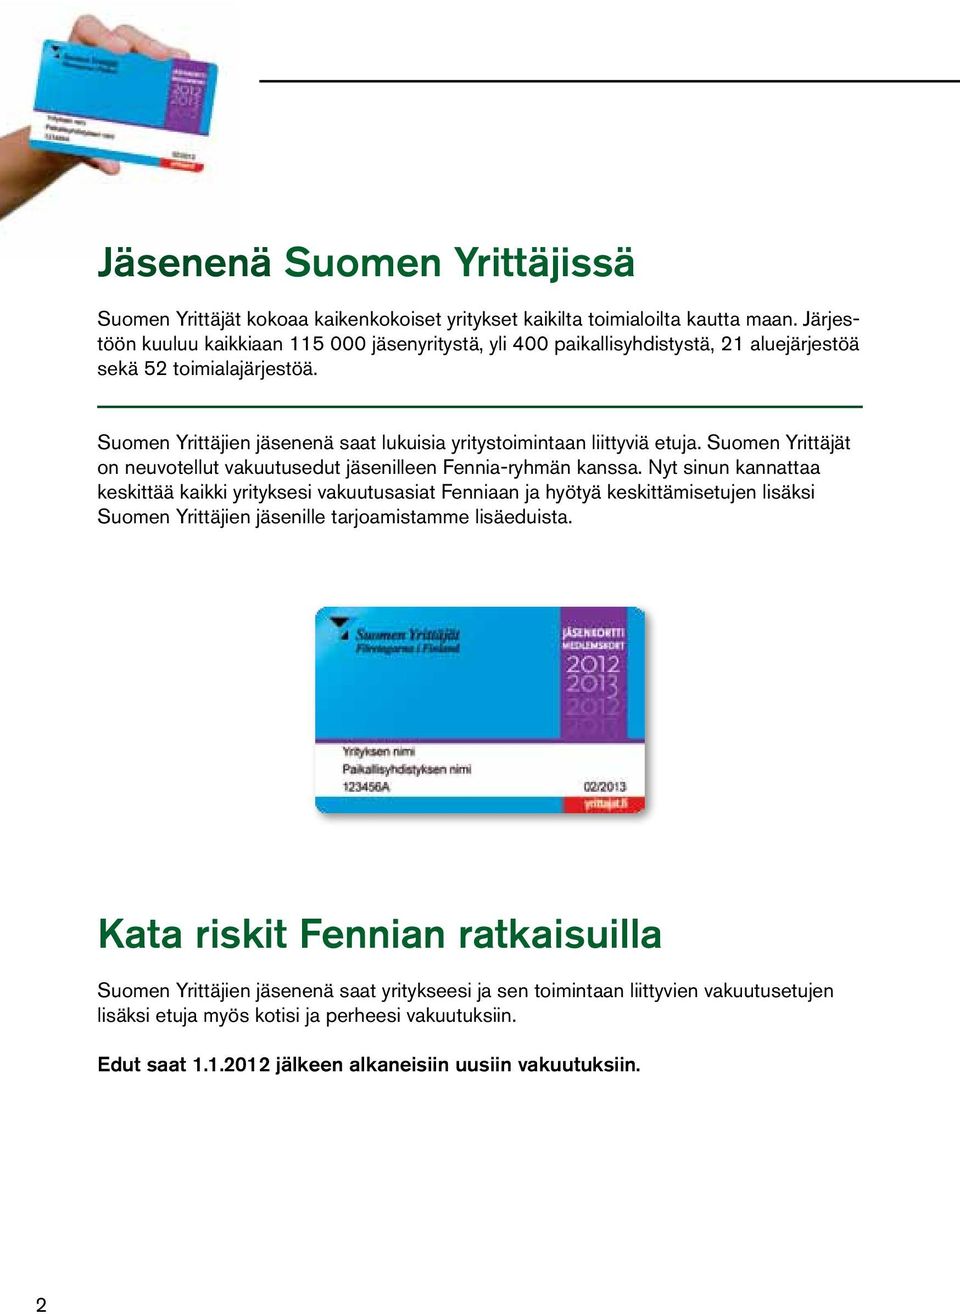 Suomen Yrittäjien jäsenenä saat lukuisia yritystoimintaan liittyviä etuja. Suomen Yrittäjät on neuvotellut vakuutusedut jäsenilleen Fennia-ryhmän kanssa.